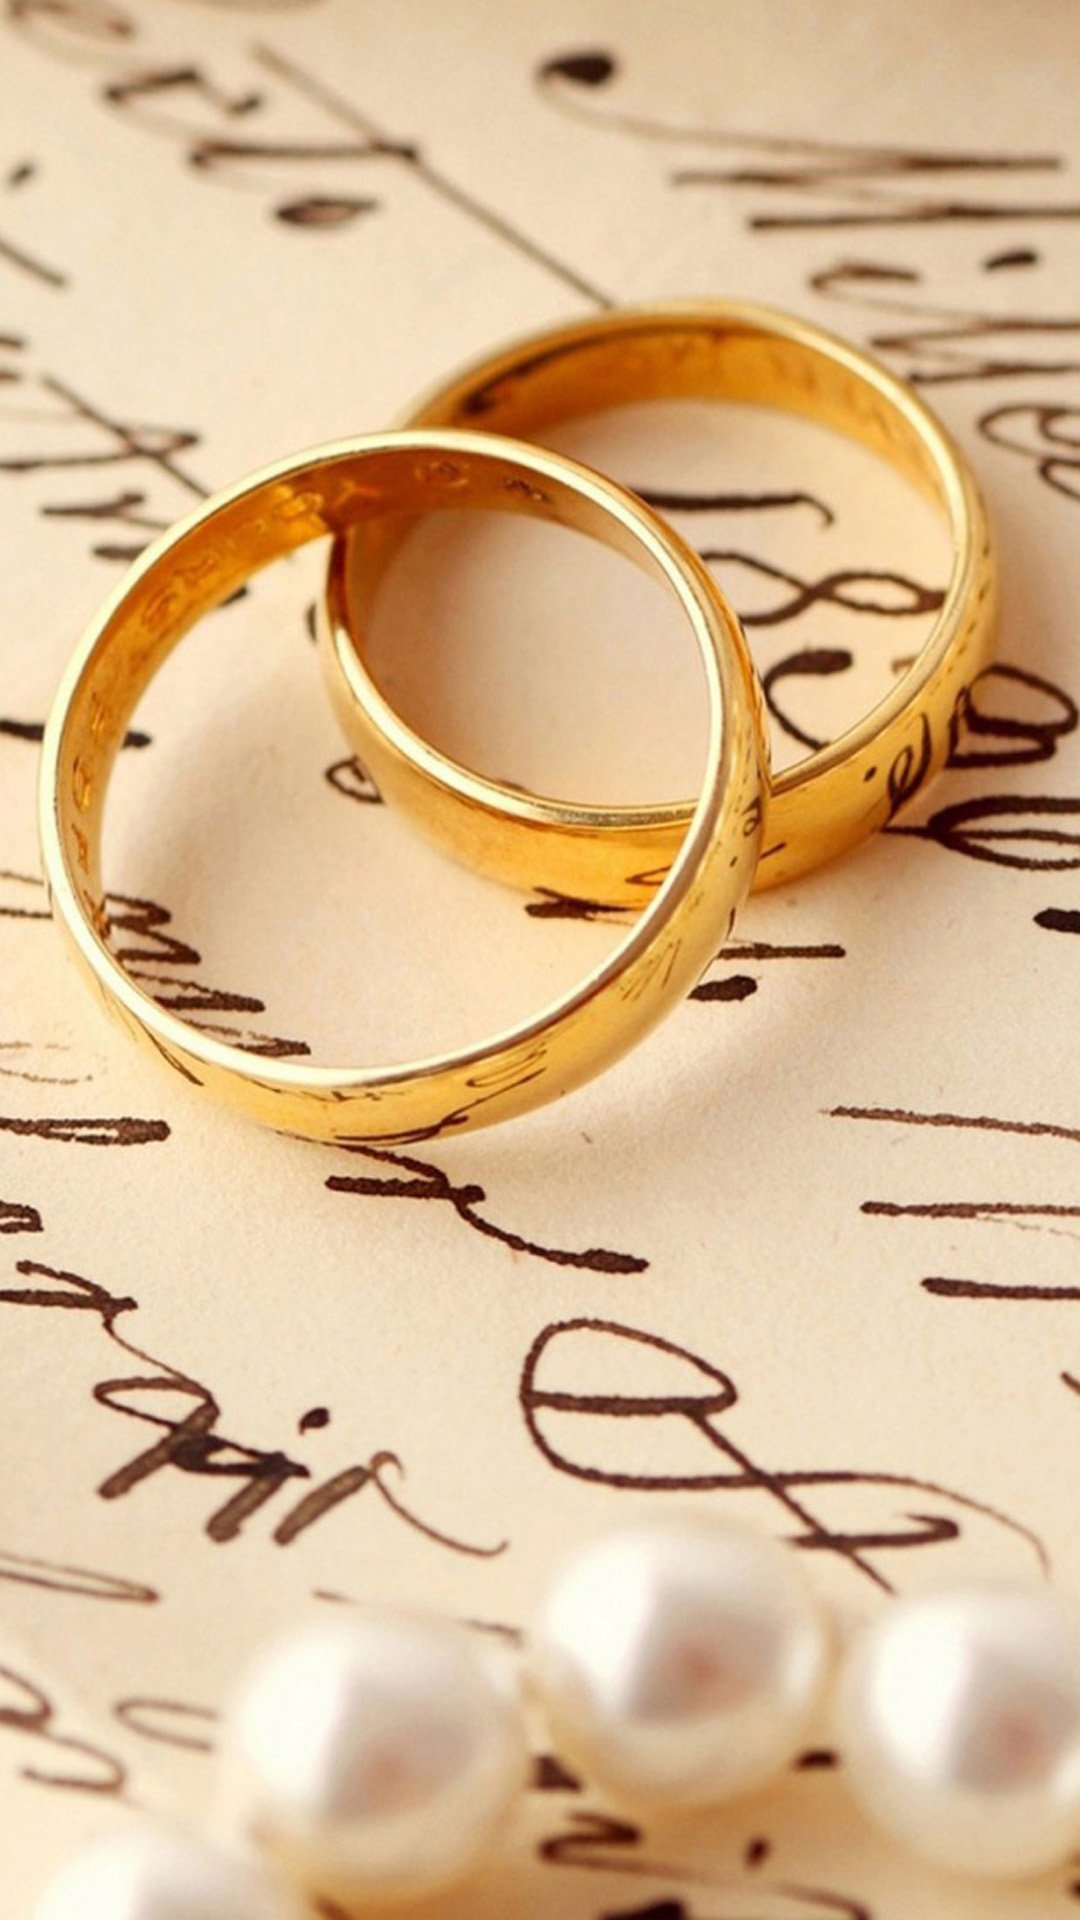 1,000+ Free Wedding Rings & Wedding Images - Pixabay